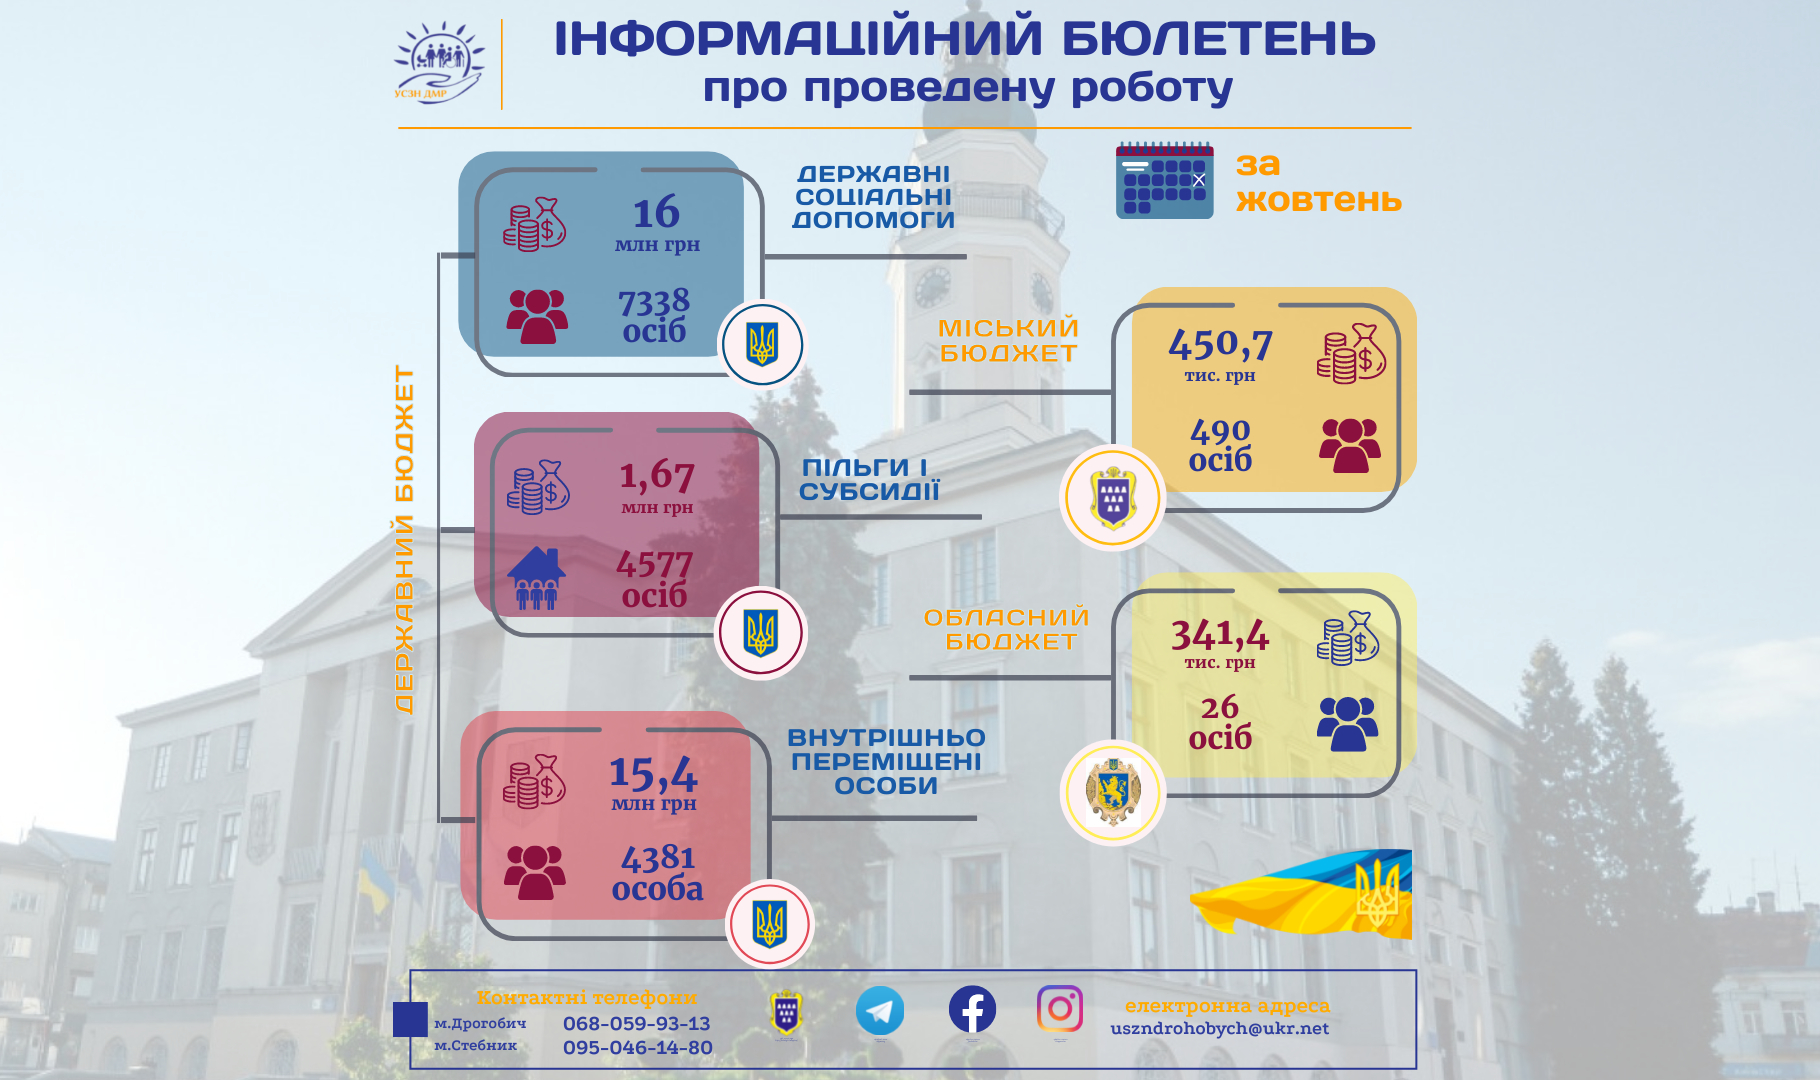 Інформаційний бюлетень про проведену роботу управління соціального захисту населення Дрогобицької міської ради за жовтень